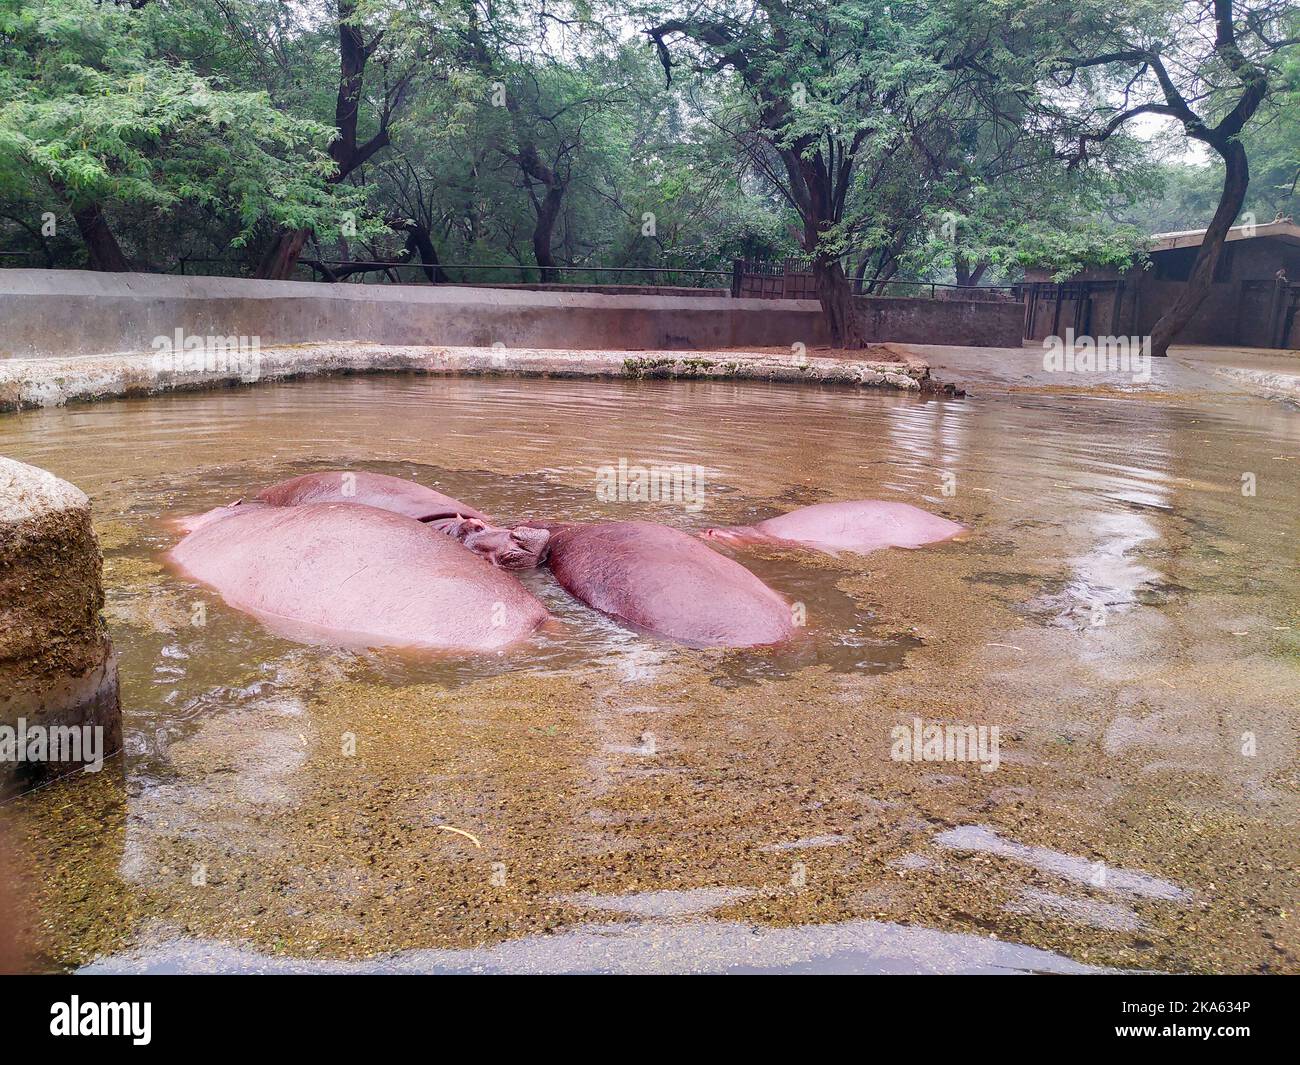 2 novembre 2019 New Delhi Inde. Hippopotame, également appelé l'hippopotame, à l'intérieur de l'étang d'eau au zoo de New Delhi. Banque D'Images